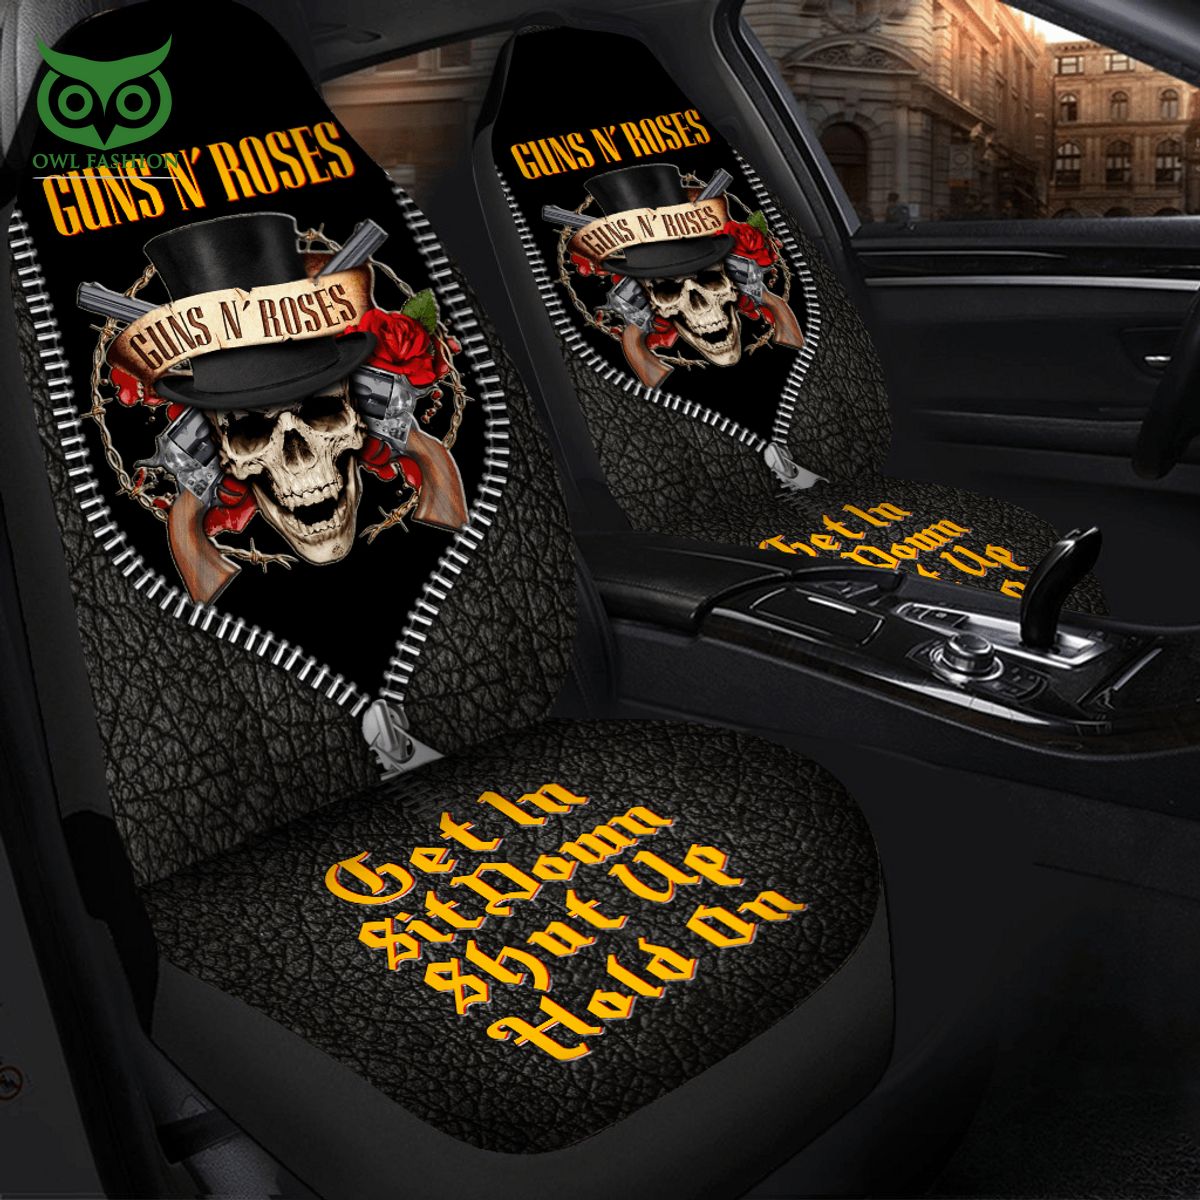 Guns N Roses Premium Leather Car Seat Cover